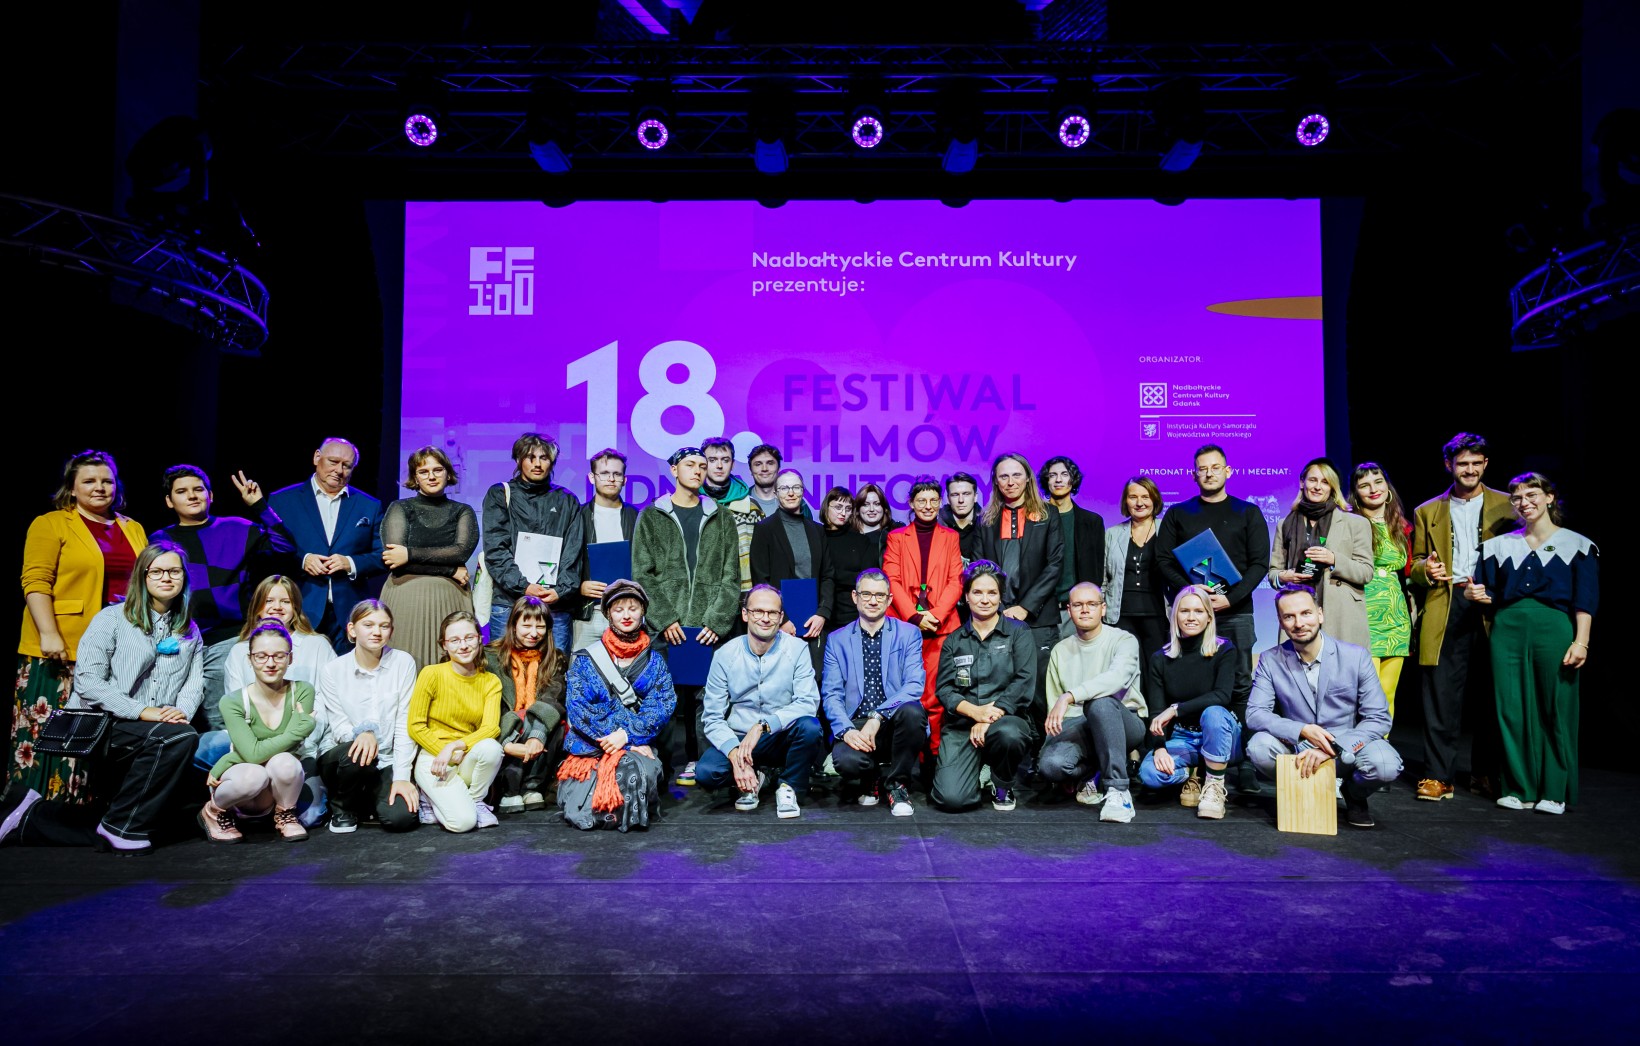 zdjęcie grupy ludzi na scenie, trzymają dyplomy, w głębi ekran, napis "18 festiwal filmów jednominutowch